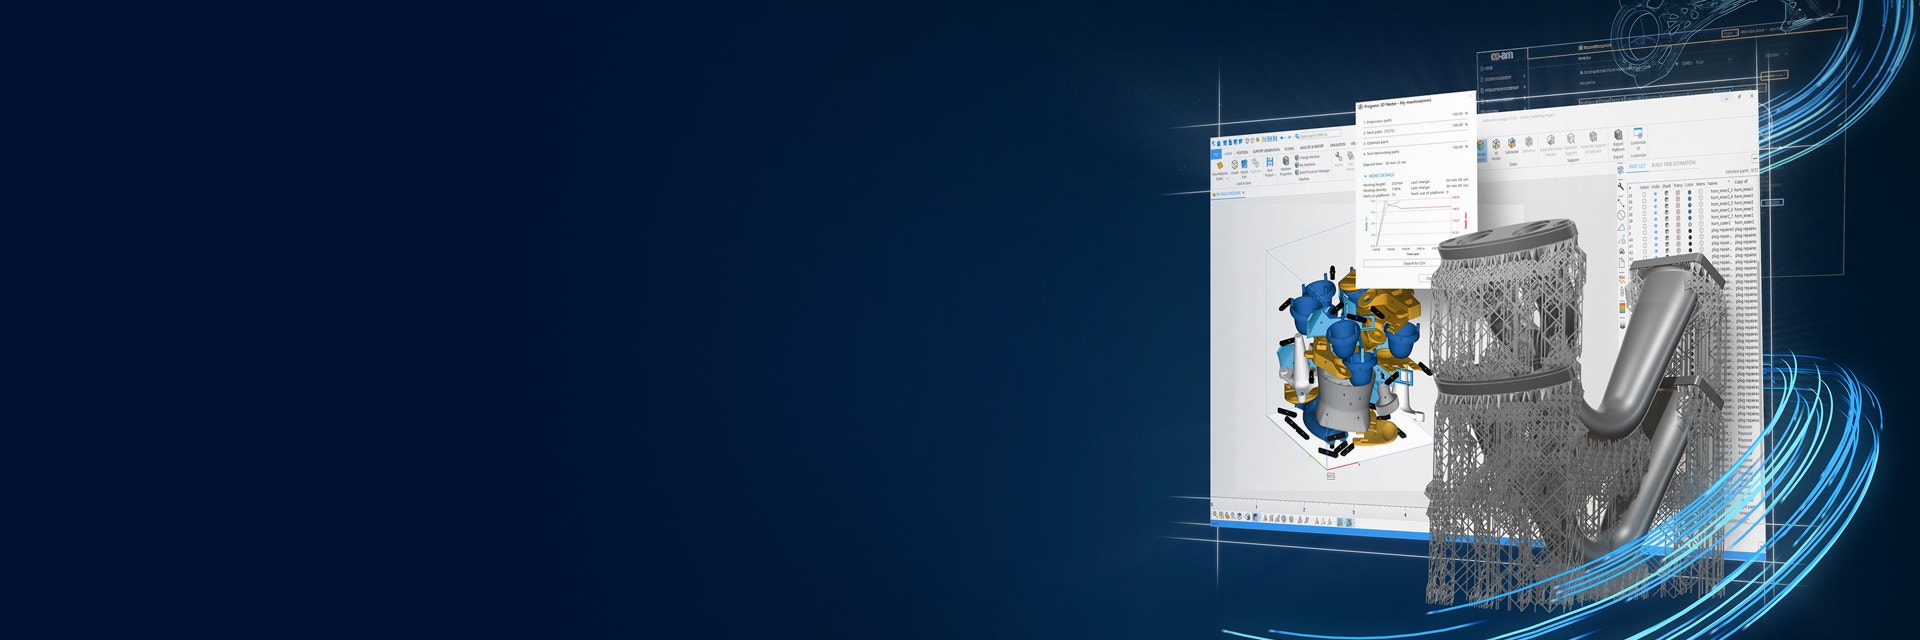 Bildschirm mit Materialise Magics und einem digitalen Bild eines 3D-gedruckten Teils mit Stützstrukturen auf einem blauen Hintergrund mit Farbverlauf